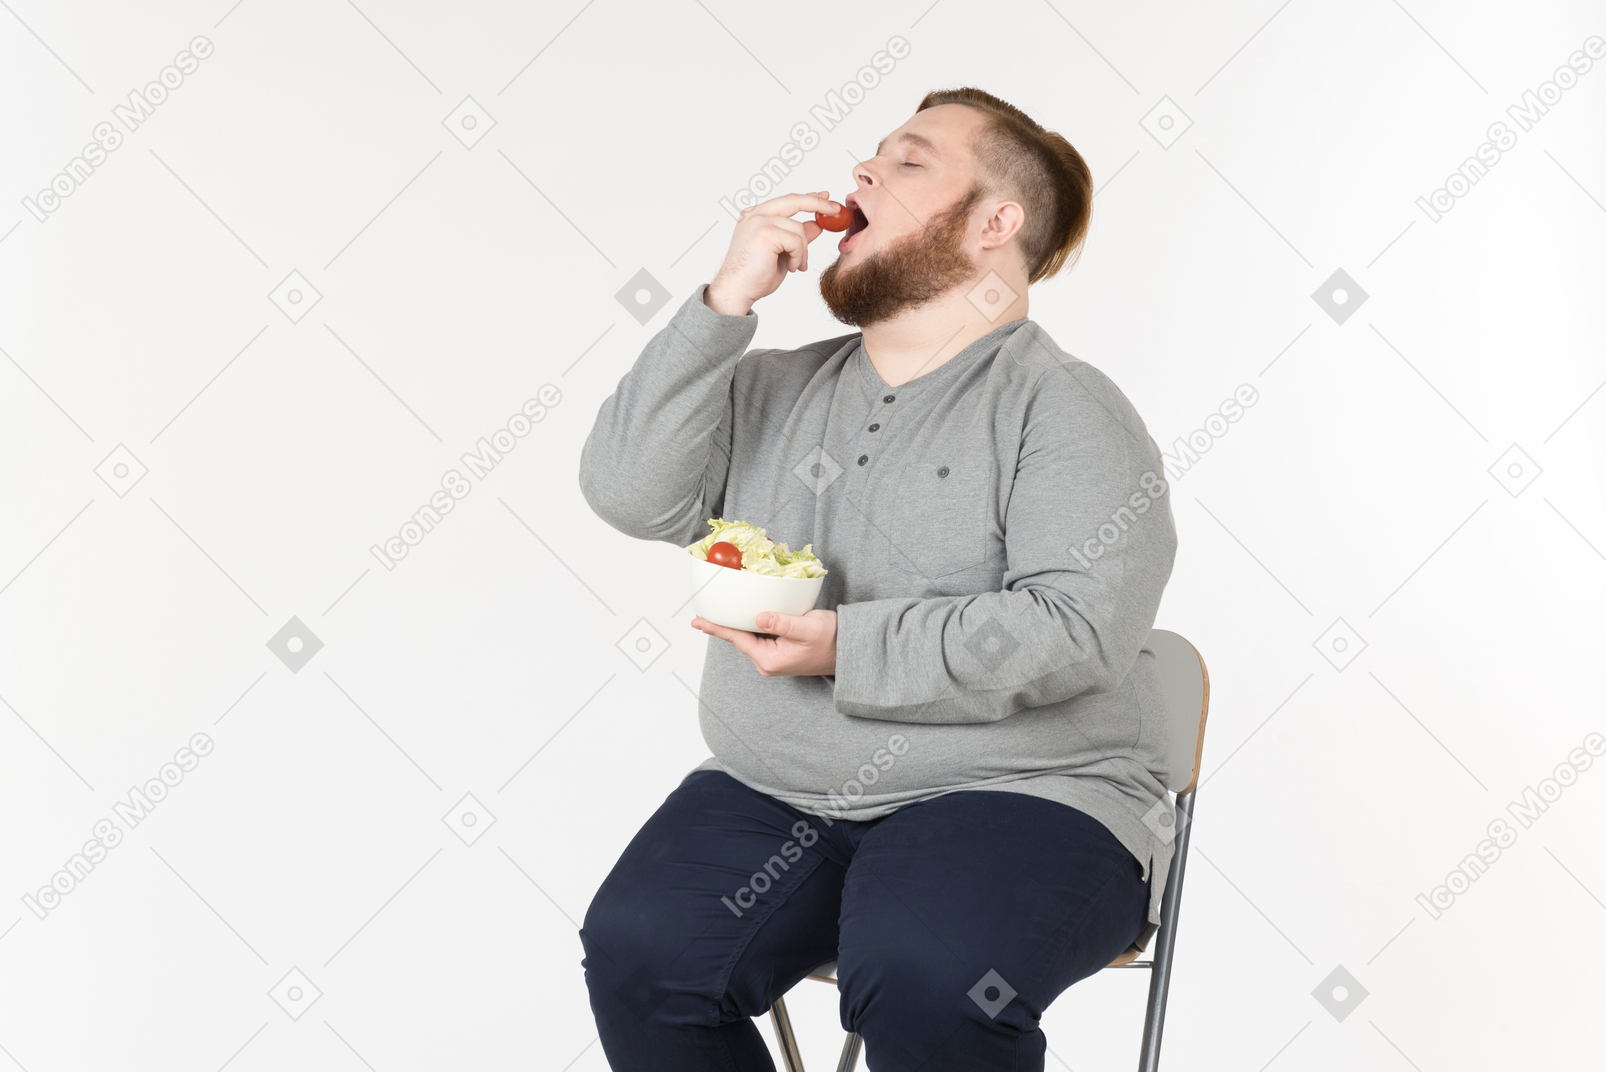 Großer bärtiger mann, der auf dem stuhl sitzt und salat isst